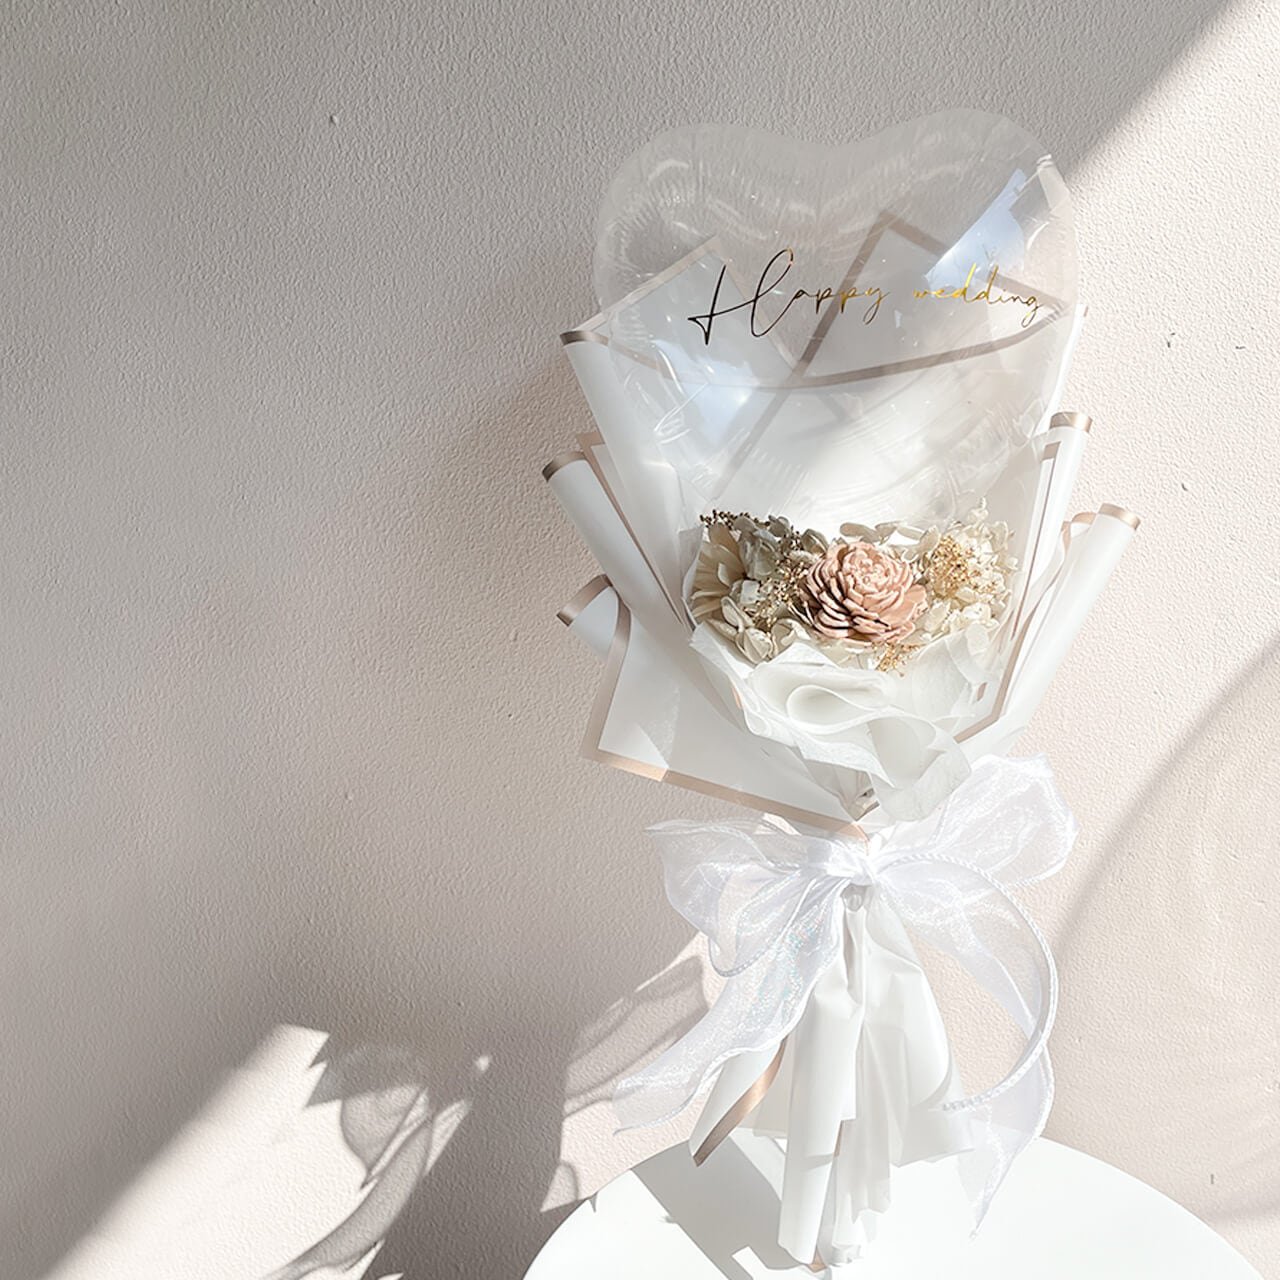 Charis Bouquet White- フラワーバルーンブーケ - 各種お祝いや卒業や入学のお祝いにギフトバルーン - チャビーバルーン 大阪  名古屋 滋賀にあるおしゃれなバルーン電報 バルーン装飾 バルーンギフトのことならチャビーバルーン